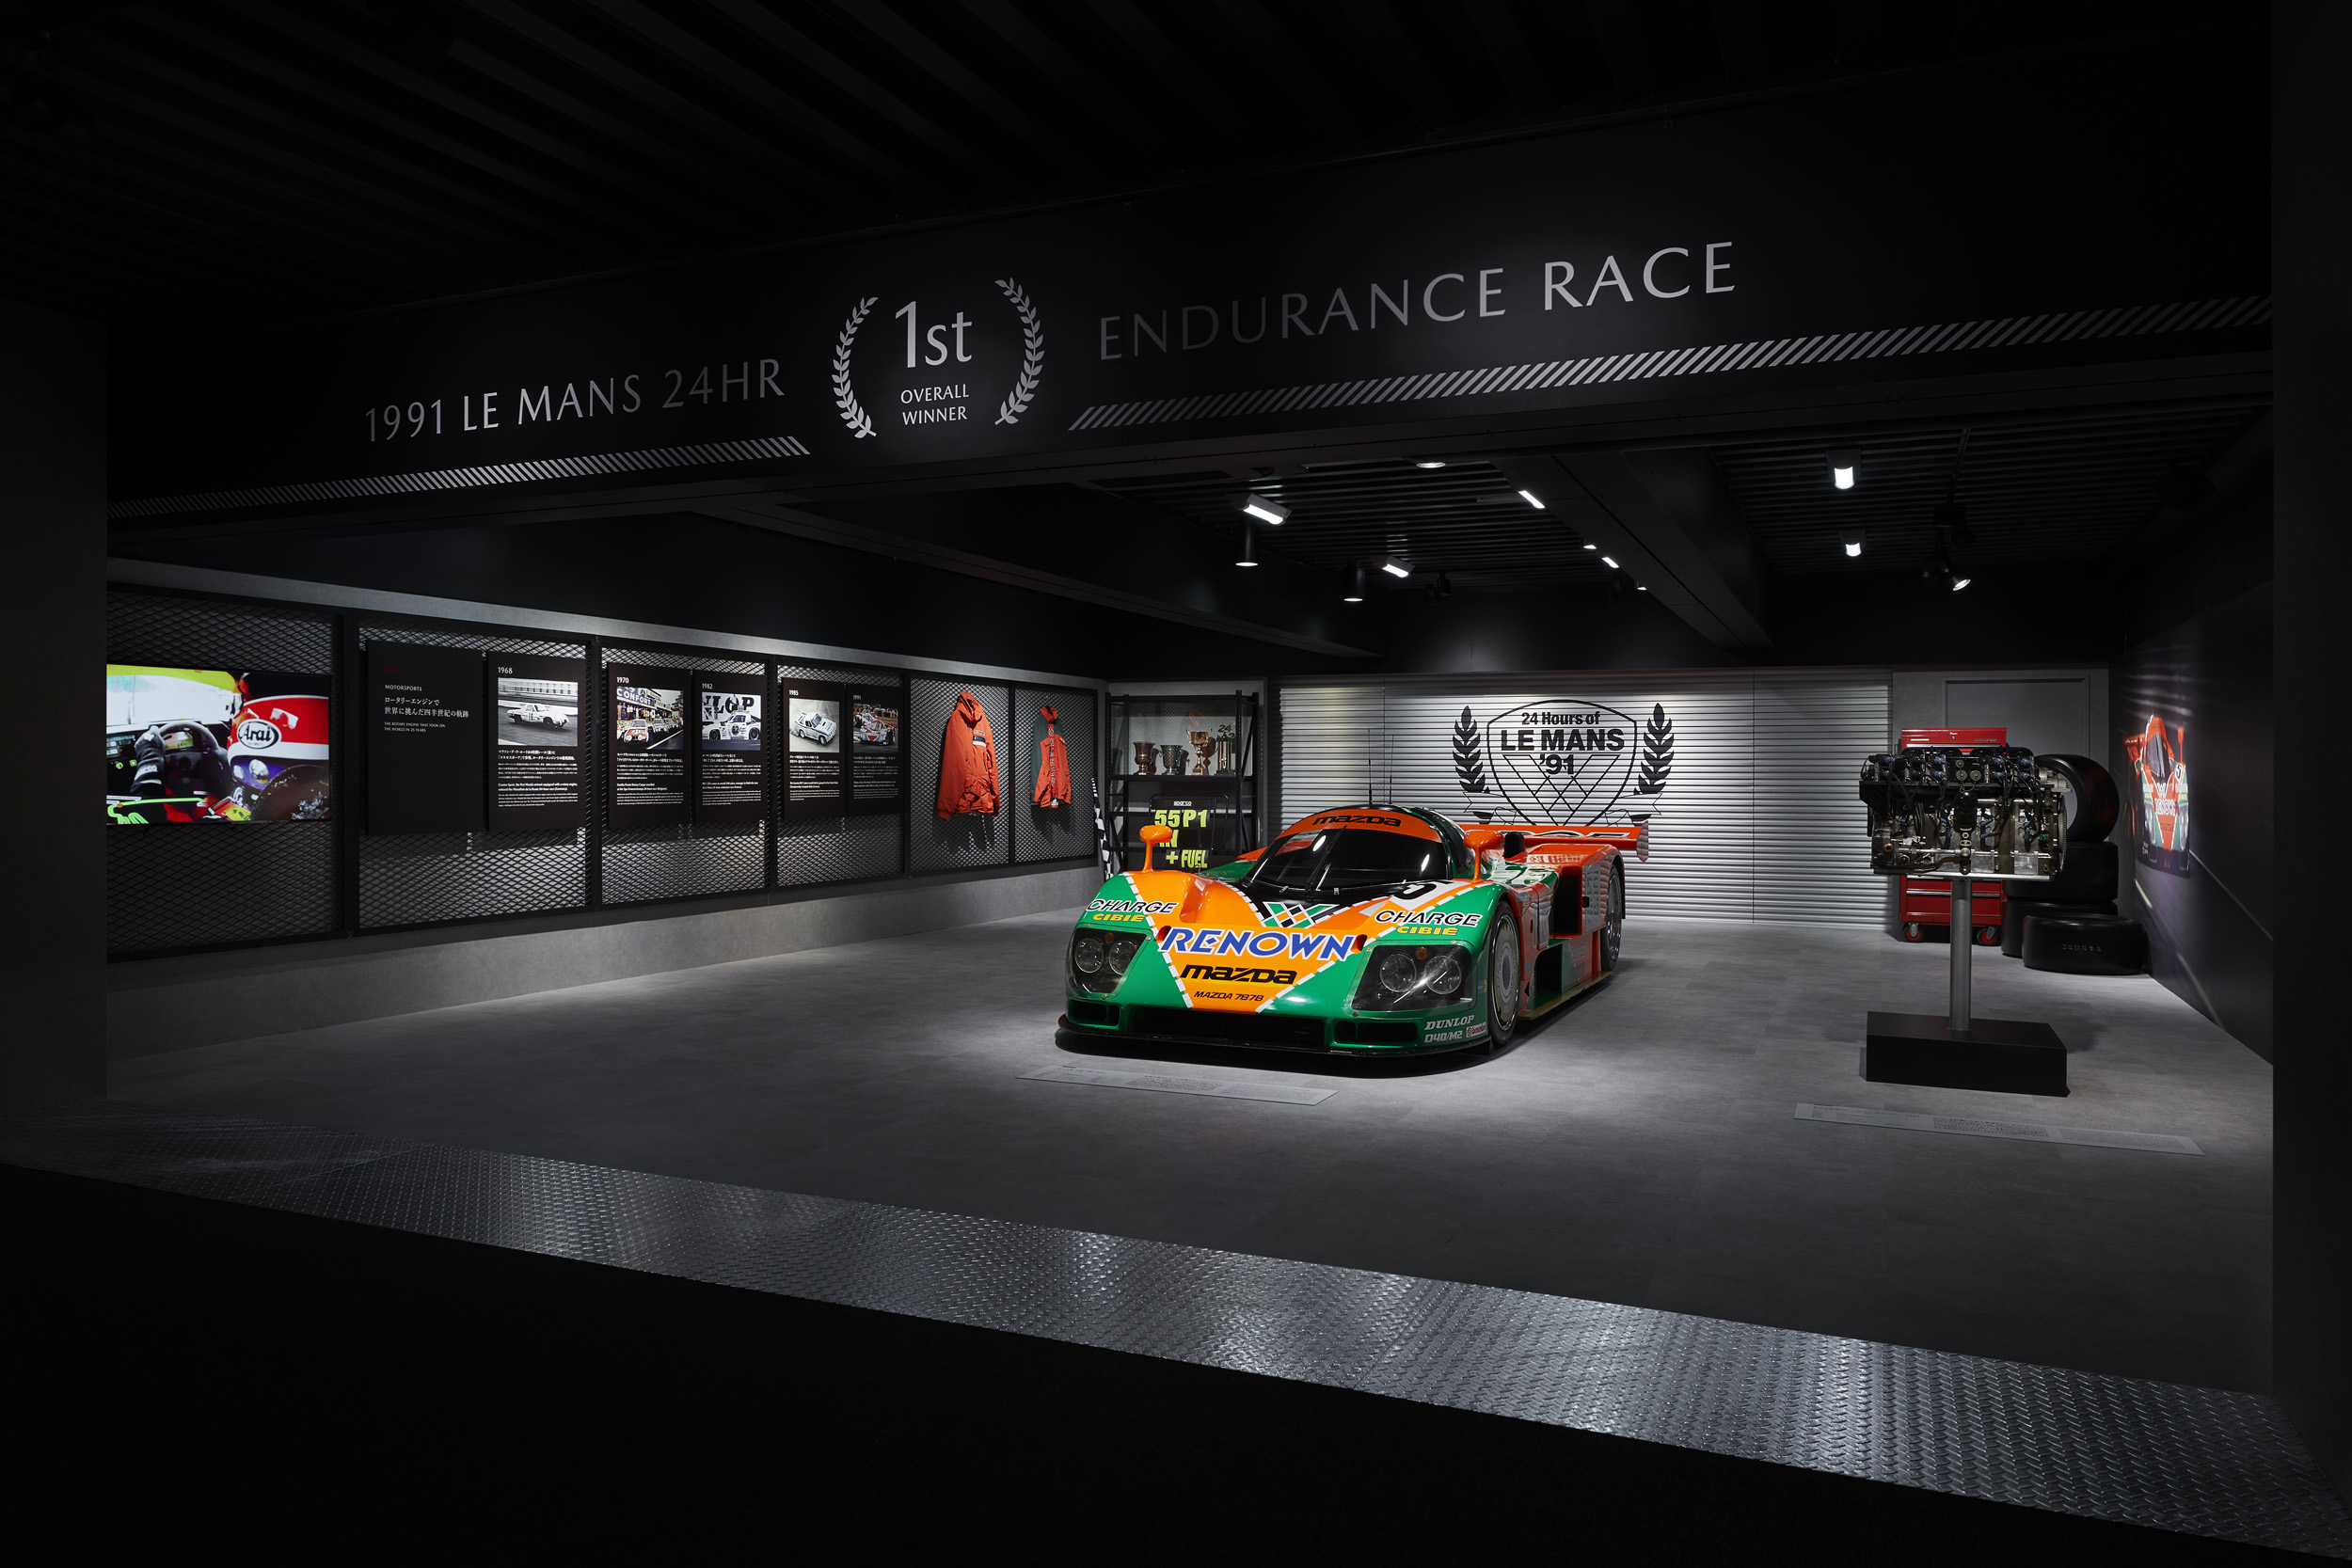 Το ανακαινισμένο Mazda Museum ανοίγει τις πύλες του τον Μάιο